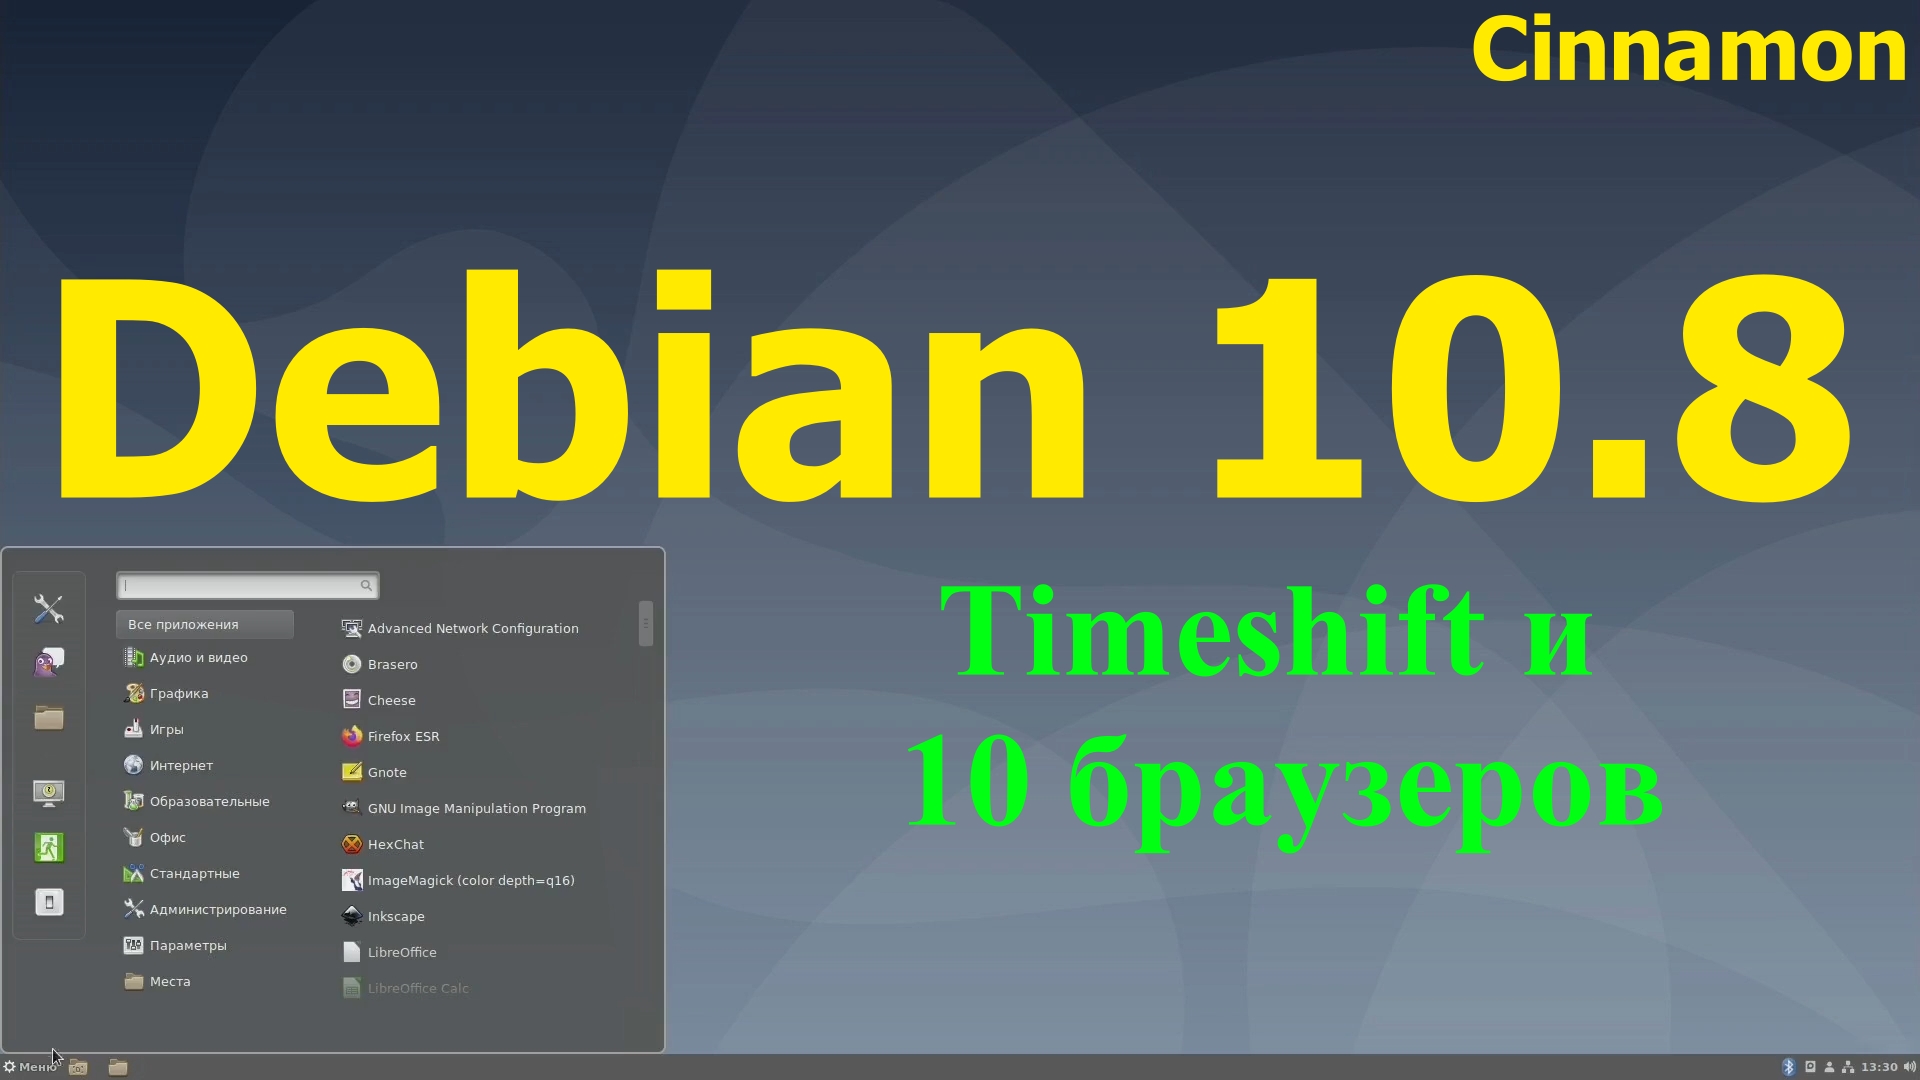 Дистрибутив Debian 10.8 (Cinnamon) +Timeshift на практике и установка 10 браузеров (Февраль 2021)